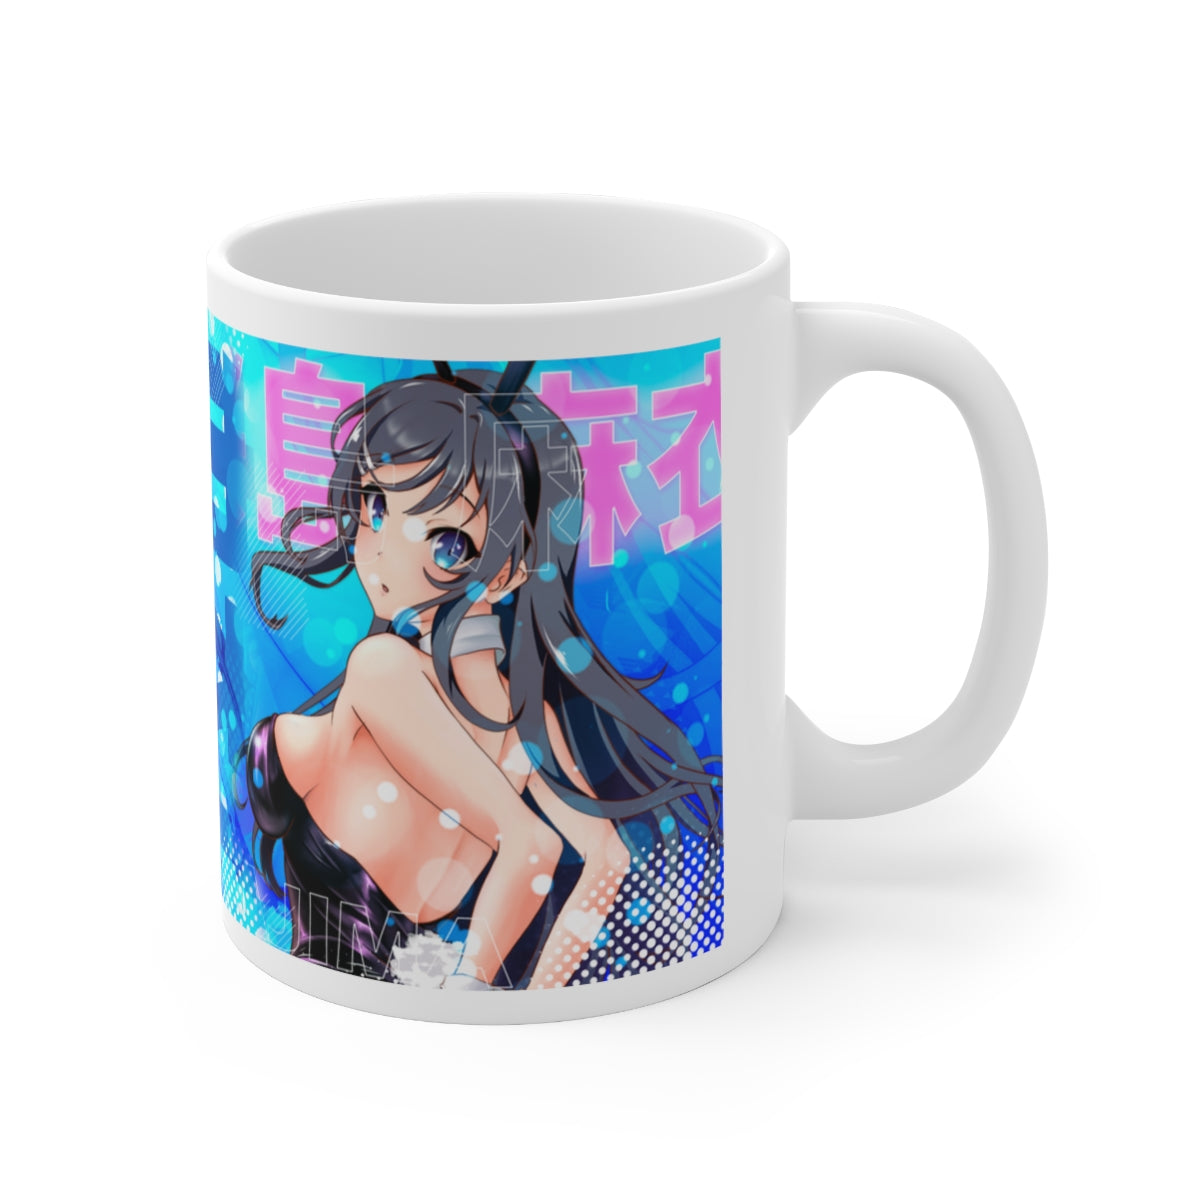 Mai Bunnygirl Coffee Mugs